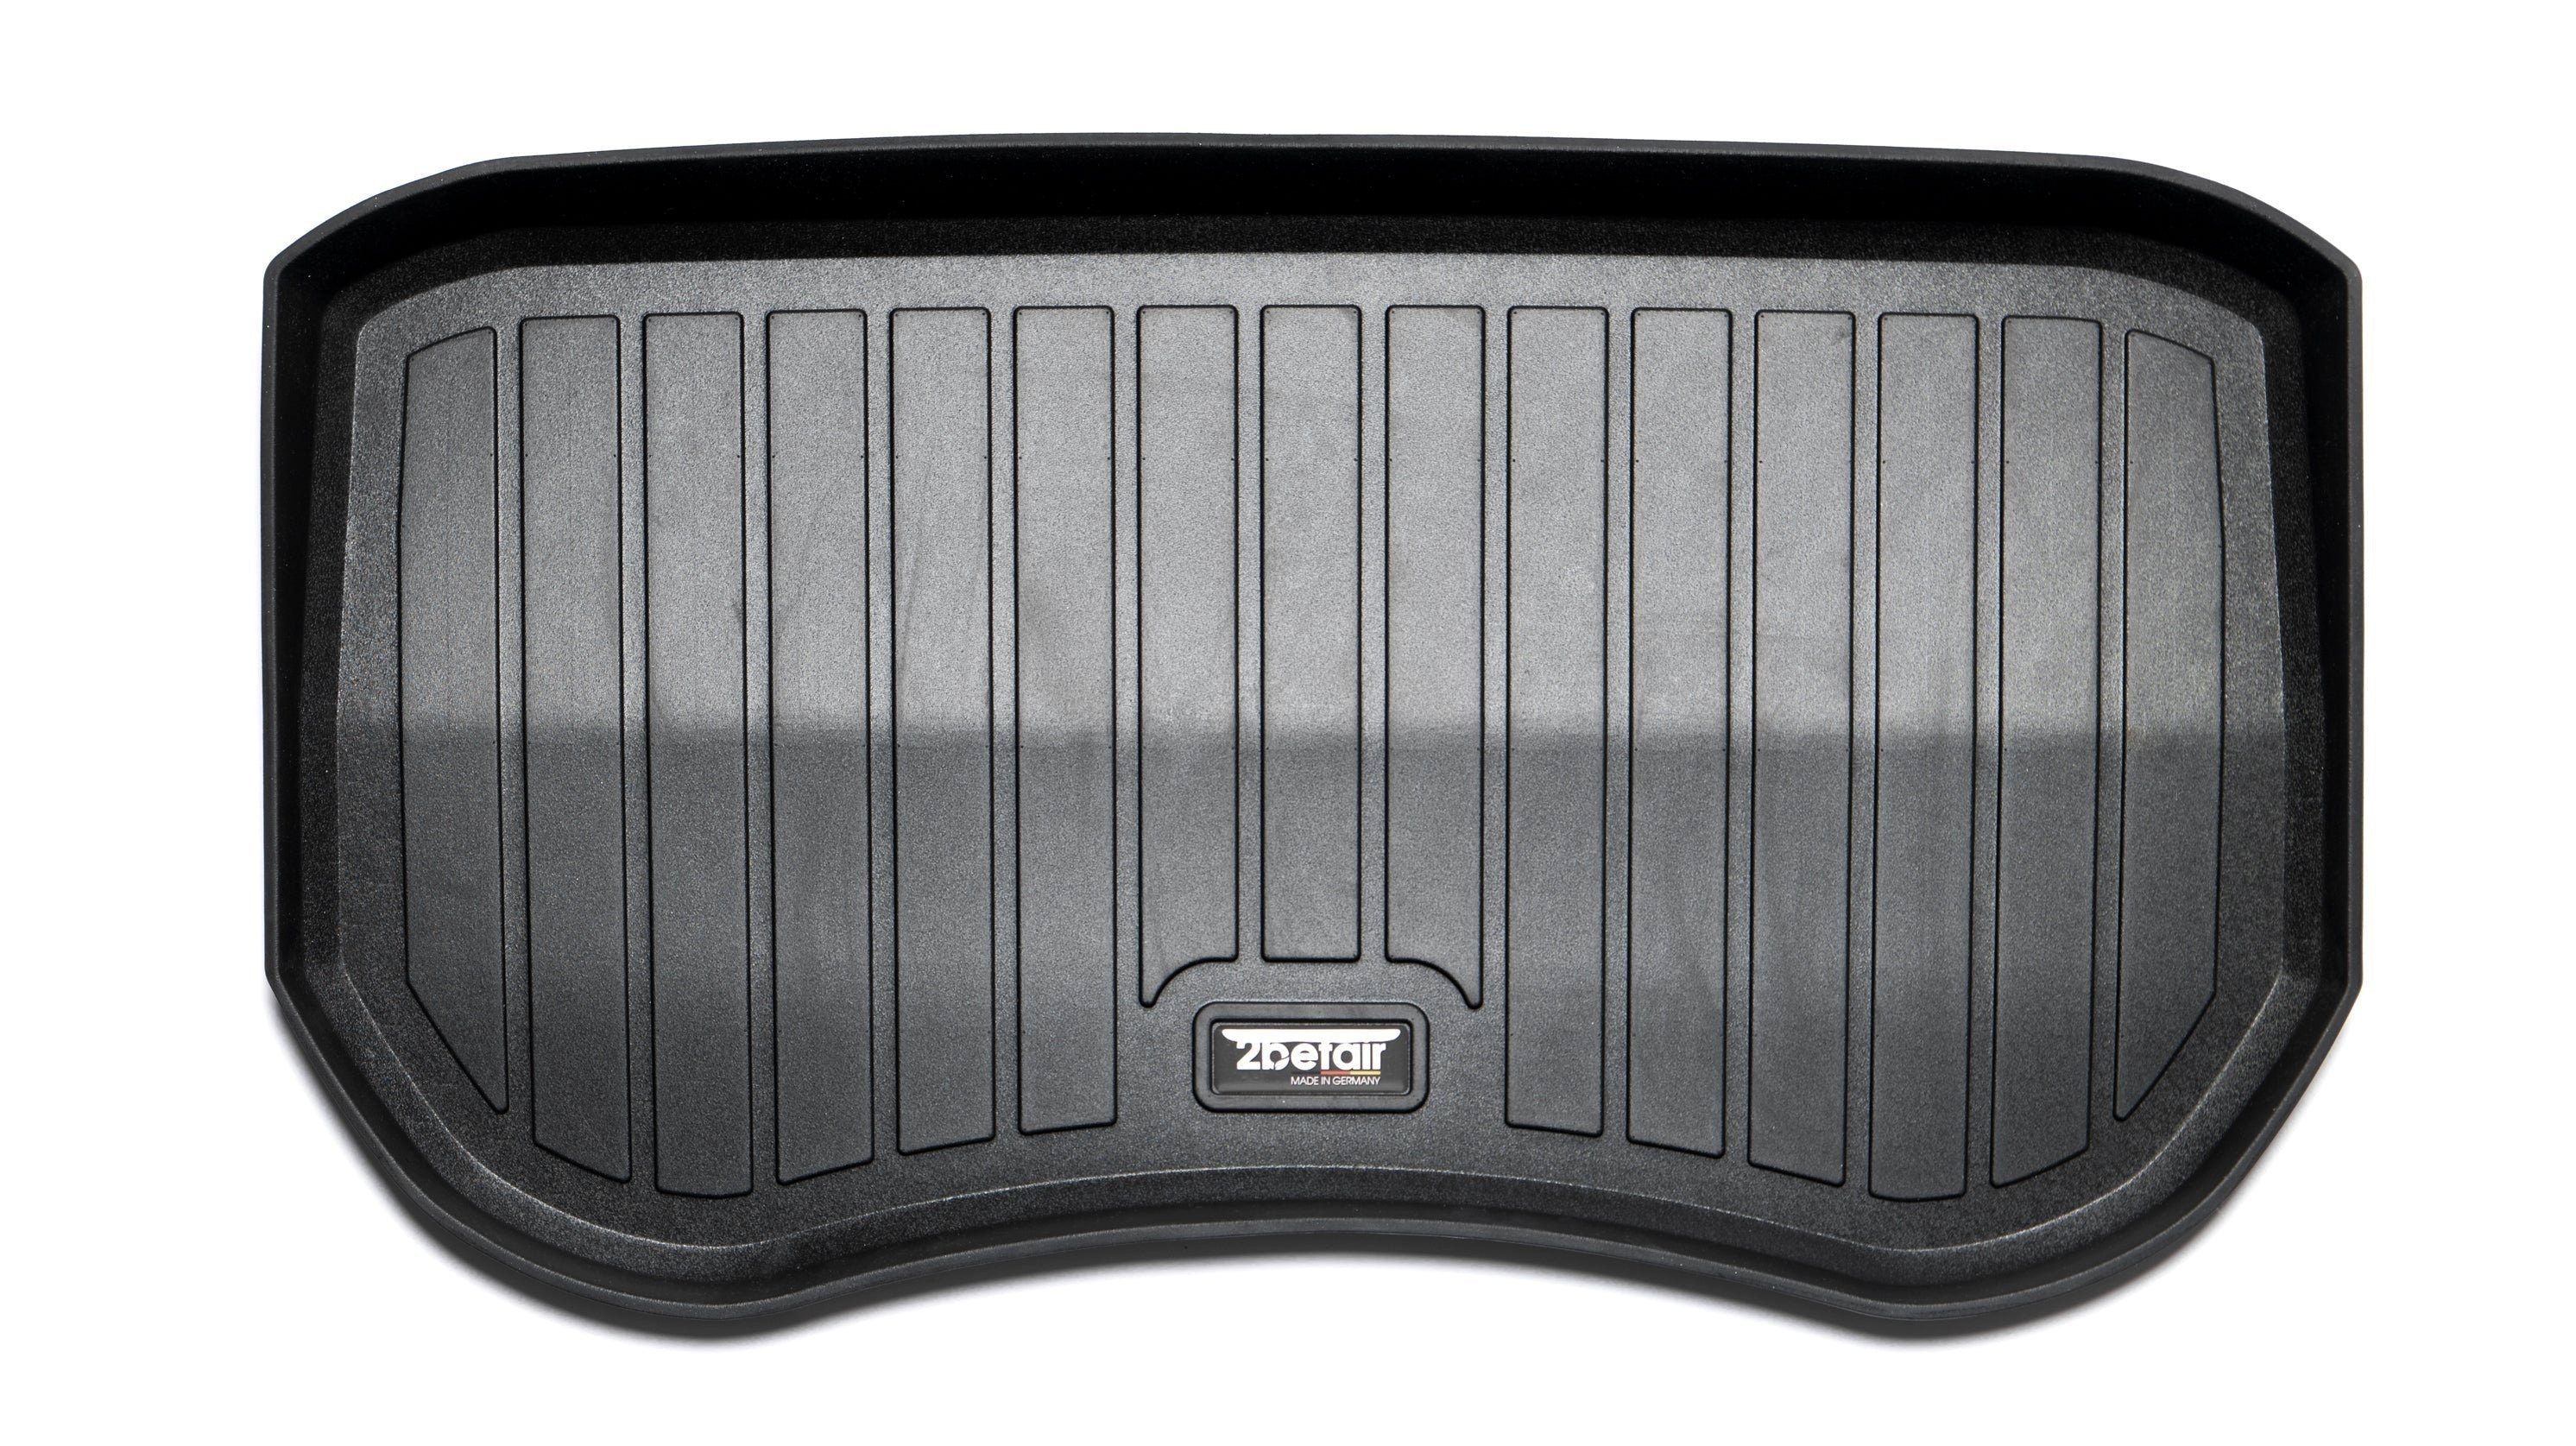 Gummimatten Kofferraum (hinten Auto-Fußmatte 2befair für Set vorne) und für, Tesla